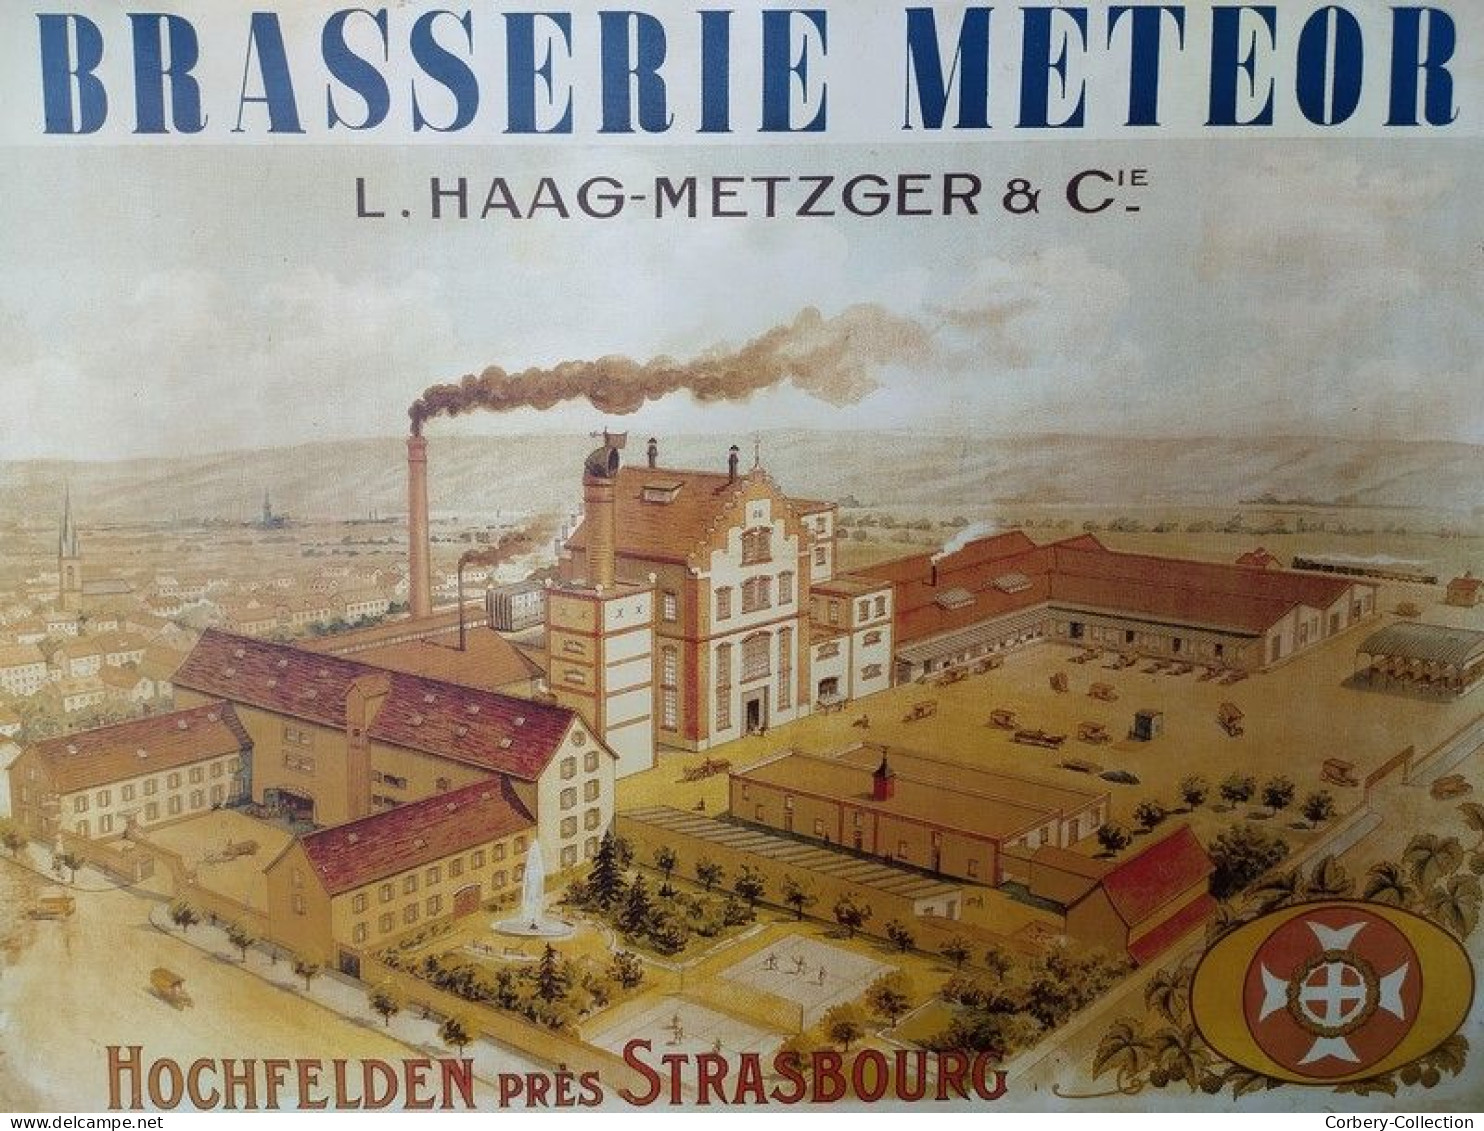 Rare Plaque Tole Publicitaire Bière Brasserie Meteor L. Haag-Metzger & Cie Holchfelden